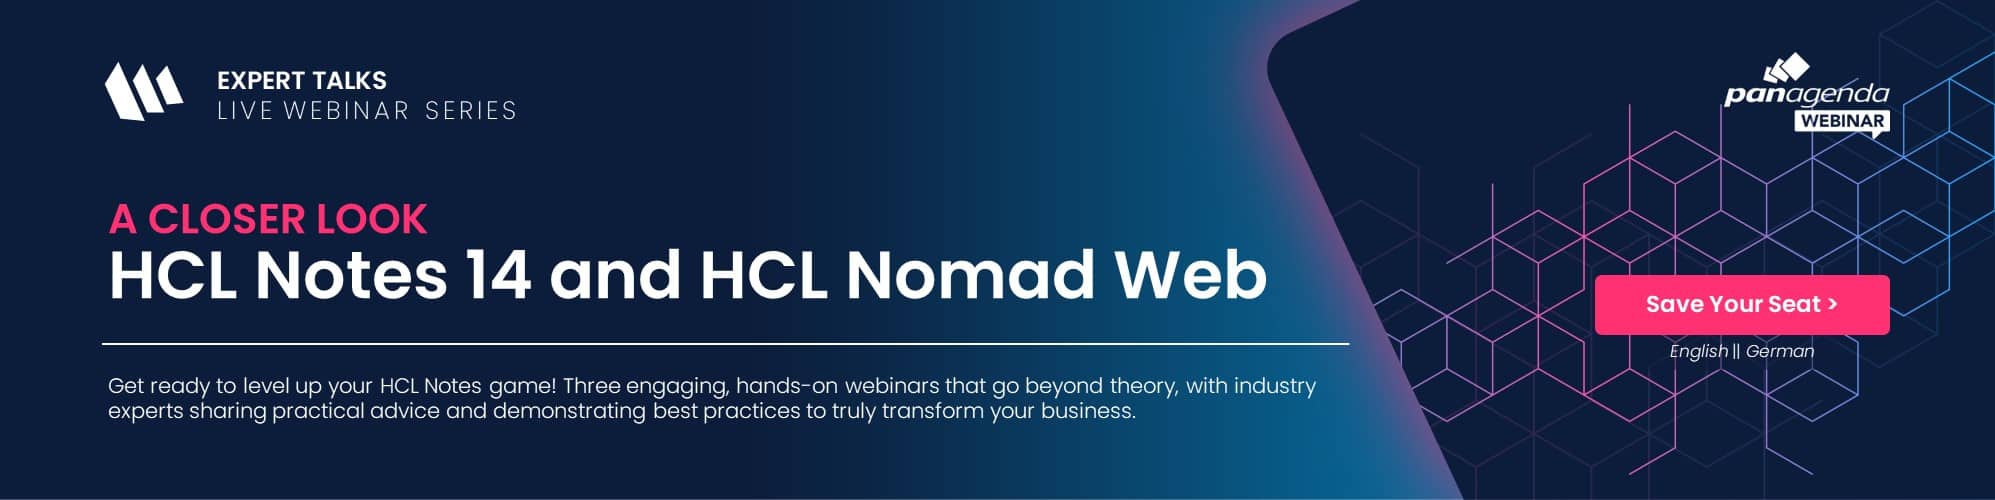 webinar-series-banner-web-Ein genauerer Blick: HCL-Notes-14-und HCL-Nomad-Netz